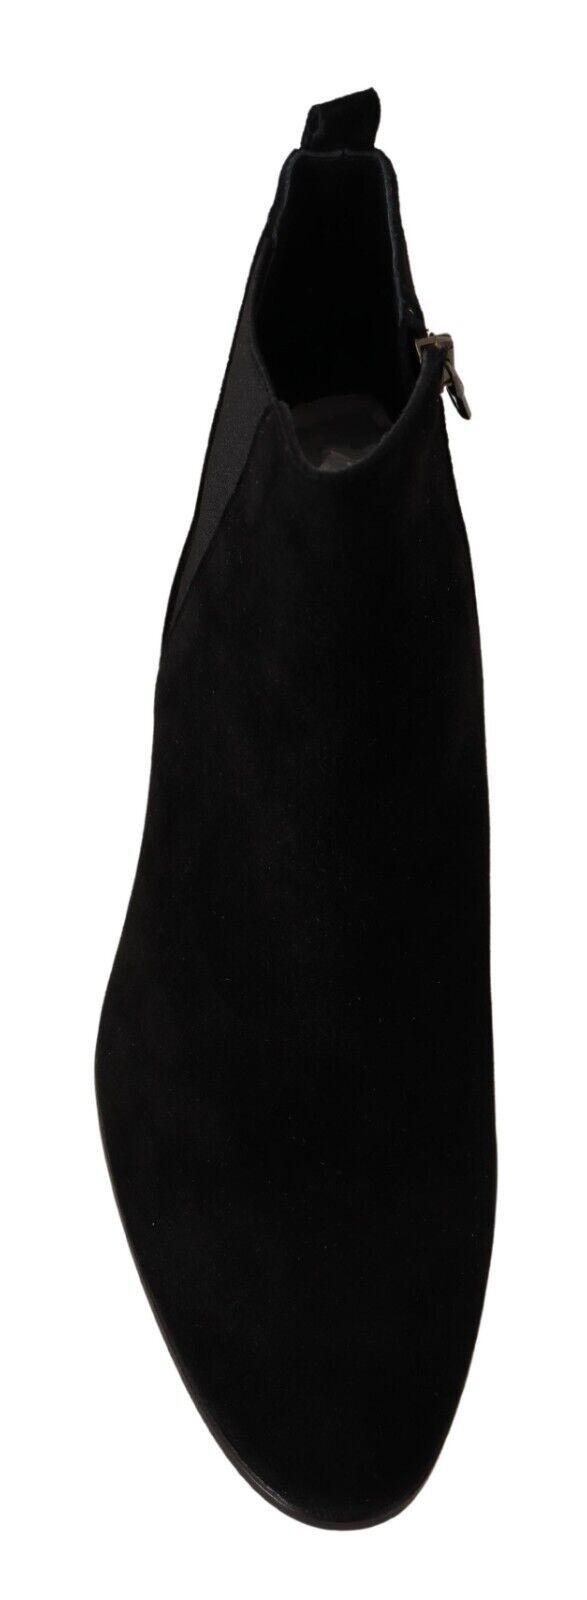 Dolce & Gabbana in pelle scamosciata in pelle scamosciata nera Chelsea Stivali da uomo